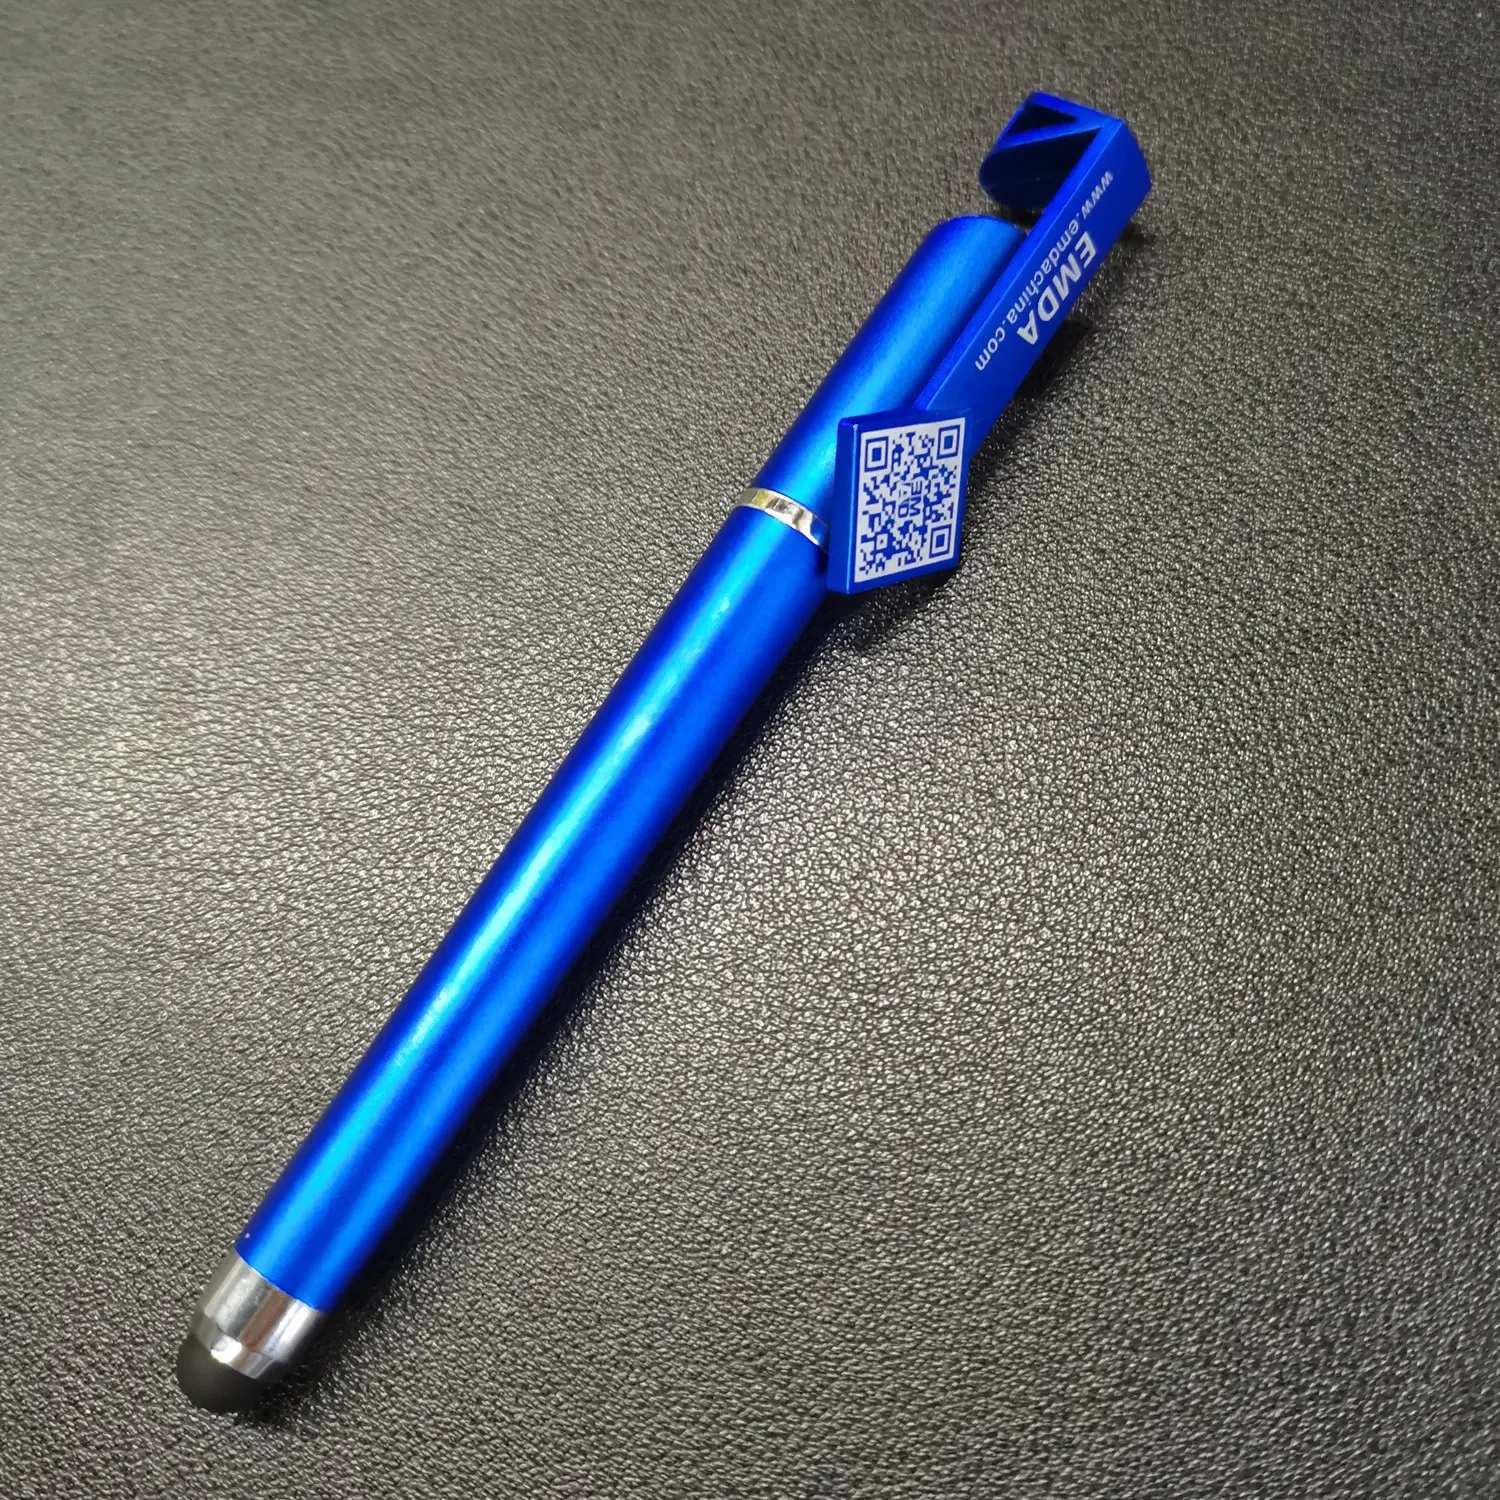 Canetas stylus de suporte de telefone com tela macia, caneta gel para escritório, caneta multifuncional 3 em 1 azul com logotipo personalizado, atacado